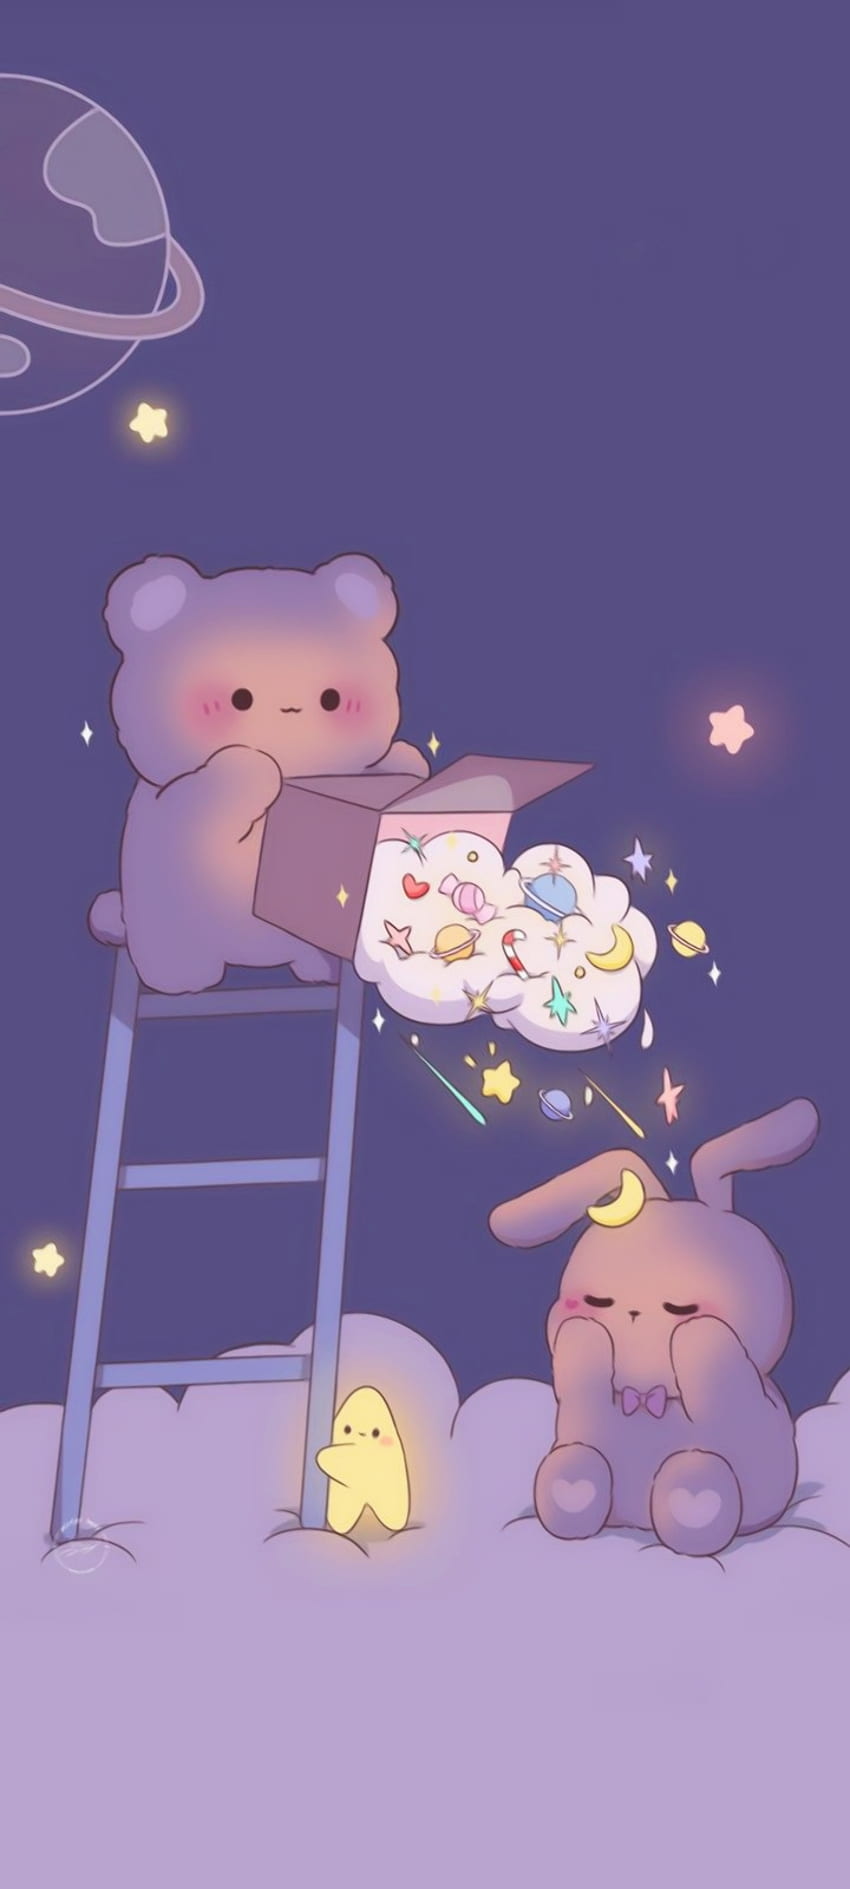 Cute bear and bunny HD phone wallpaper | Pxfuel